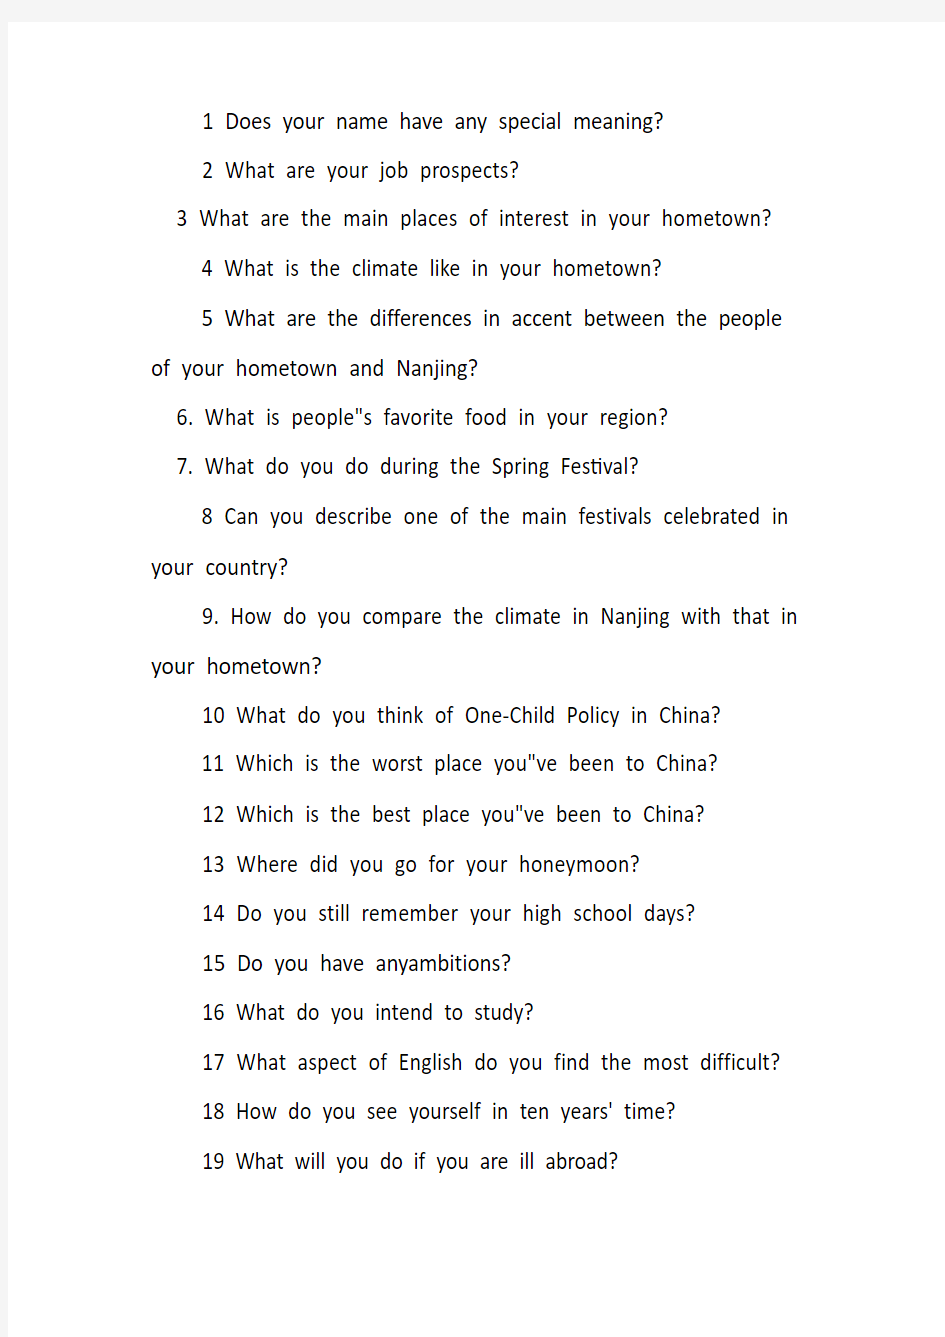 雅思口语考试常见的20个问题精选